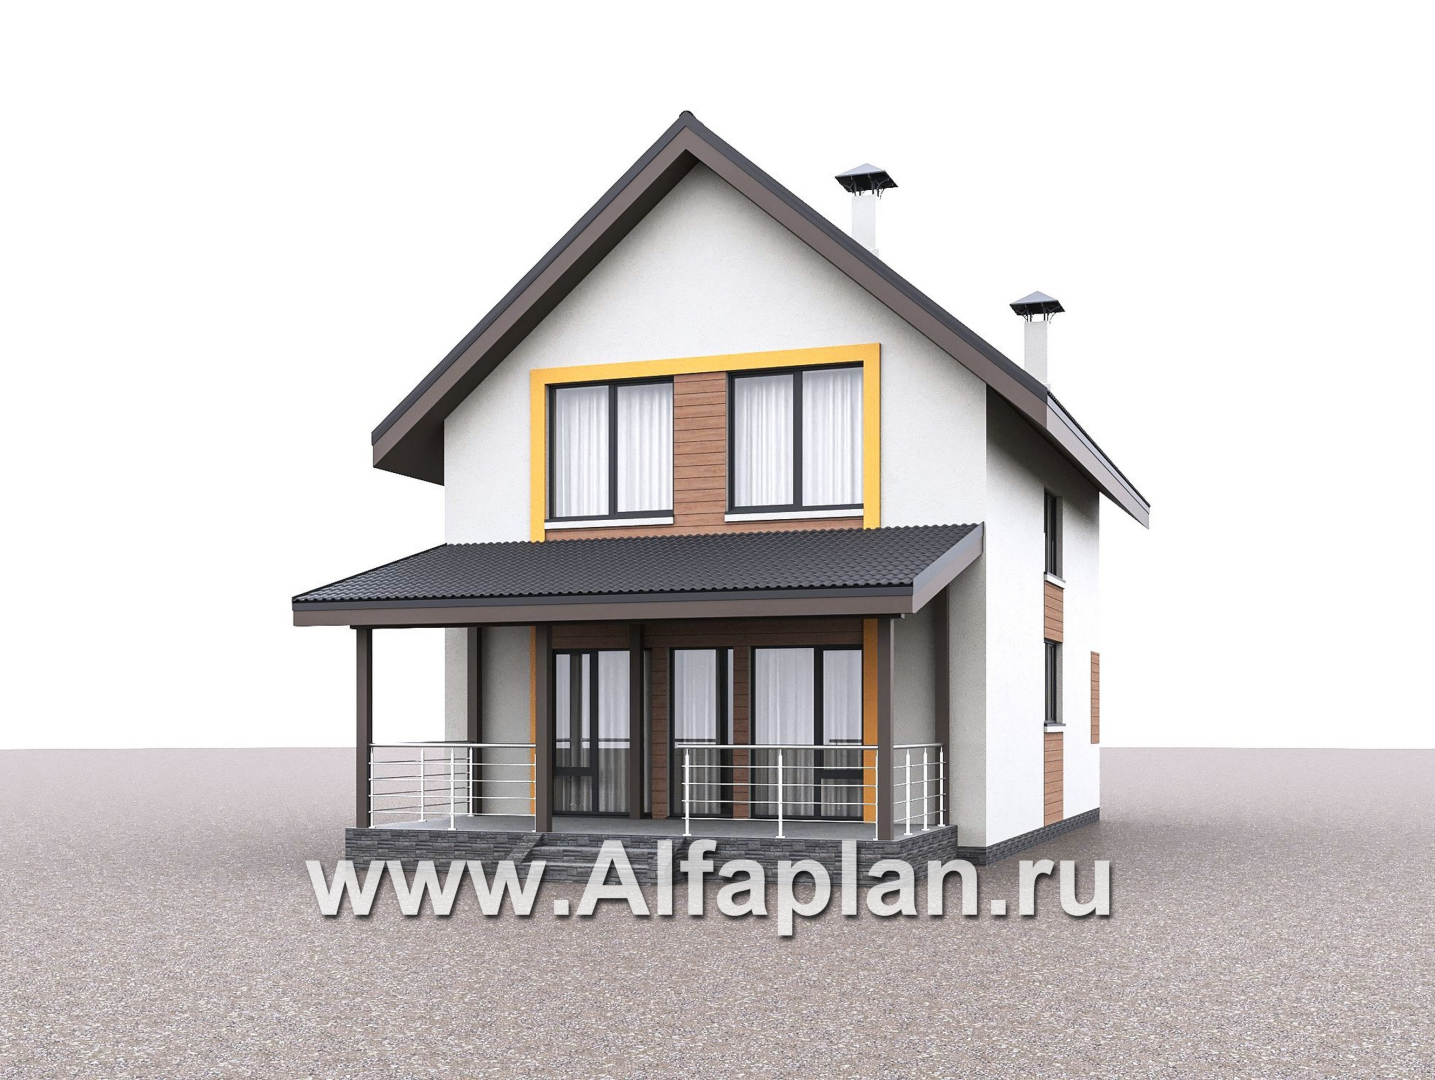 «Викинг» - проект дома, 2 этажа, с сауной и с террасой, в скандинавском стиле - дизайн дома №2